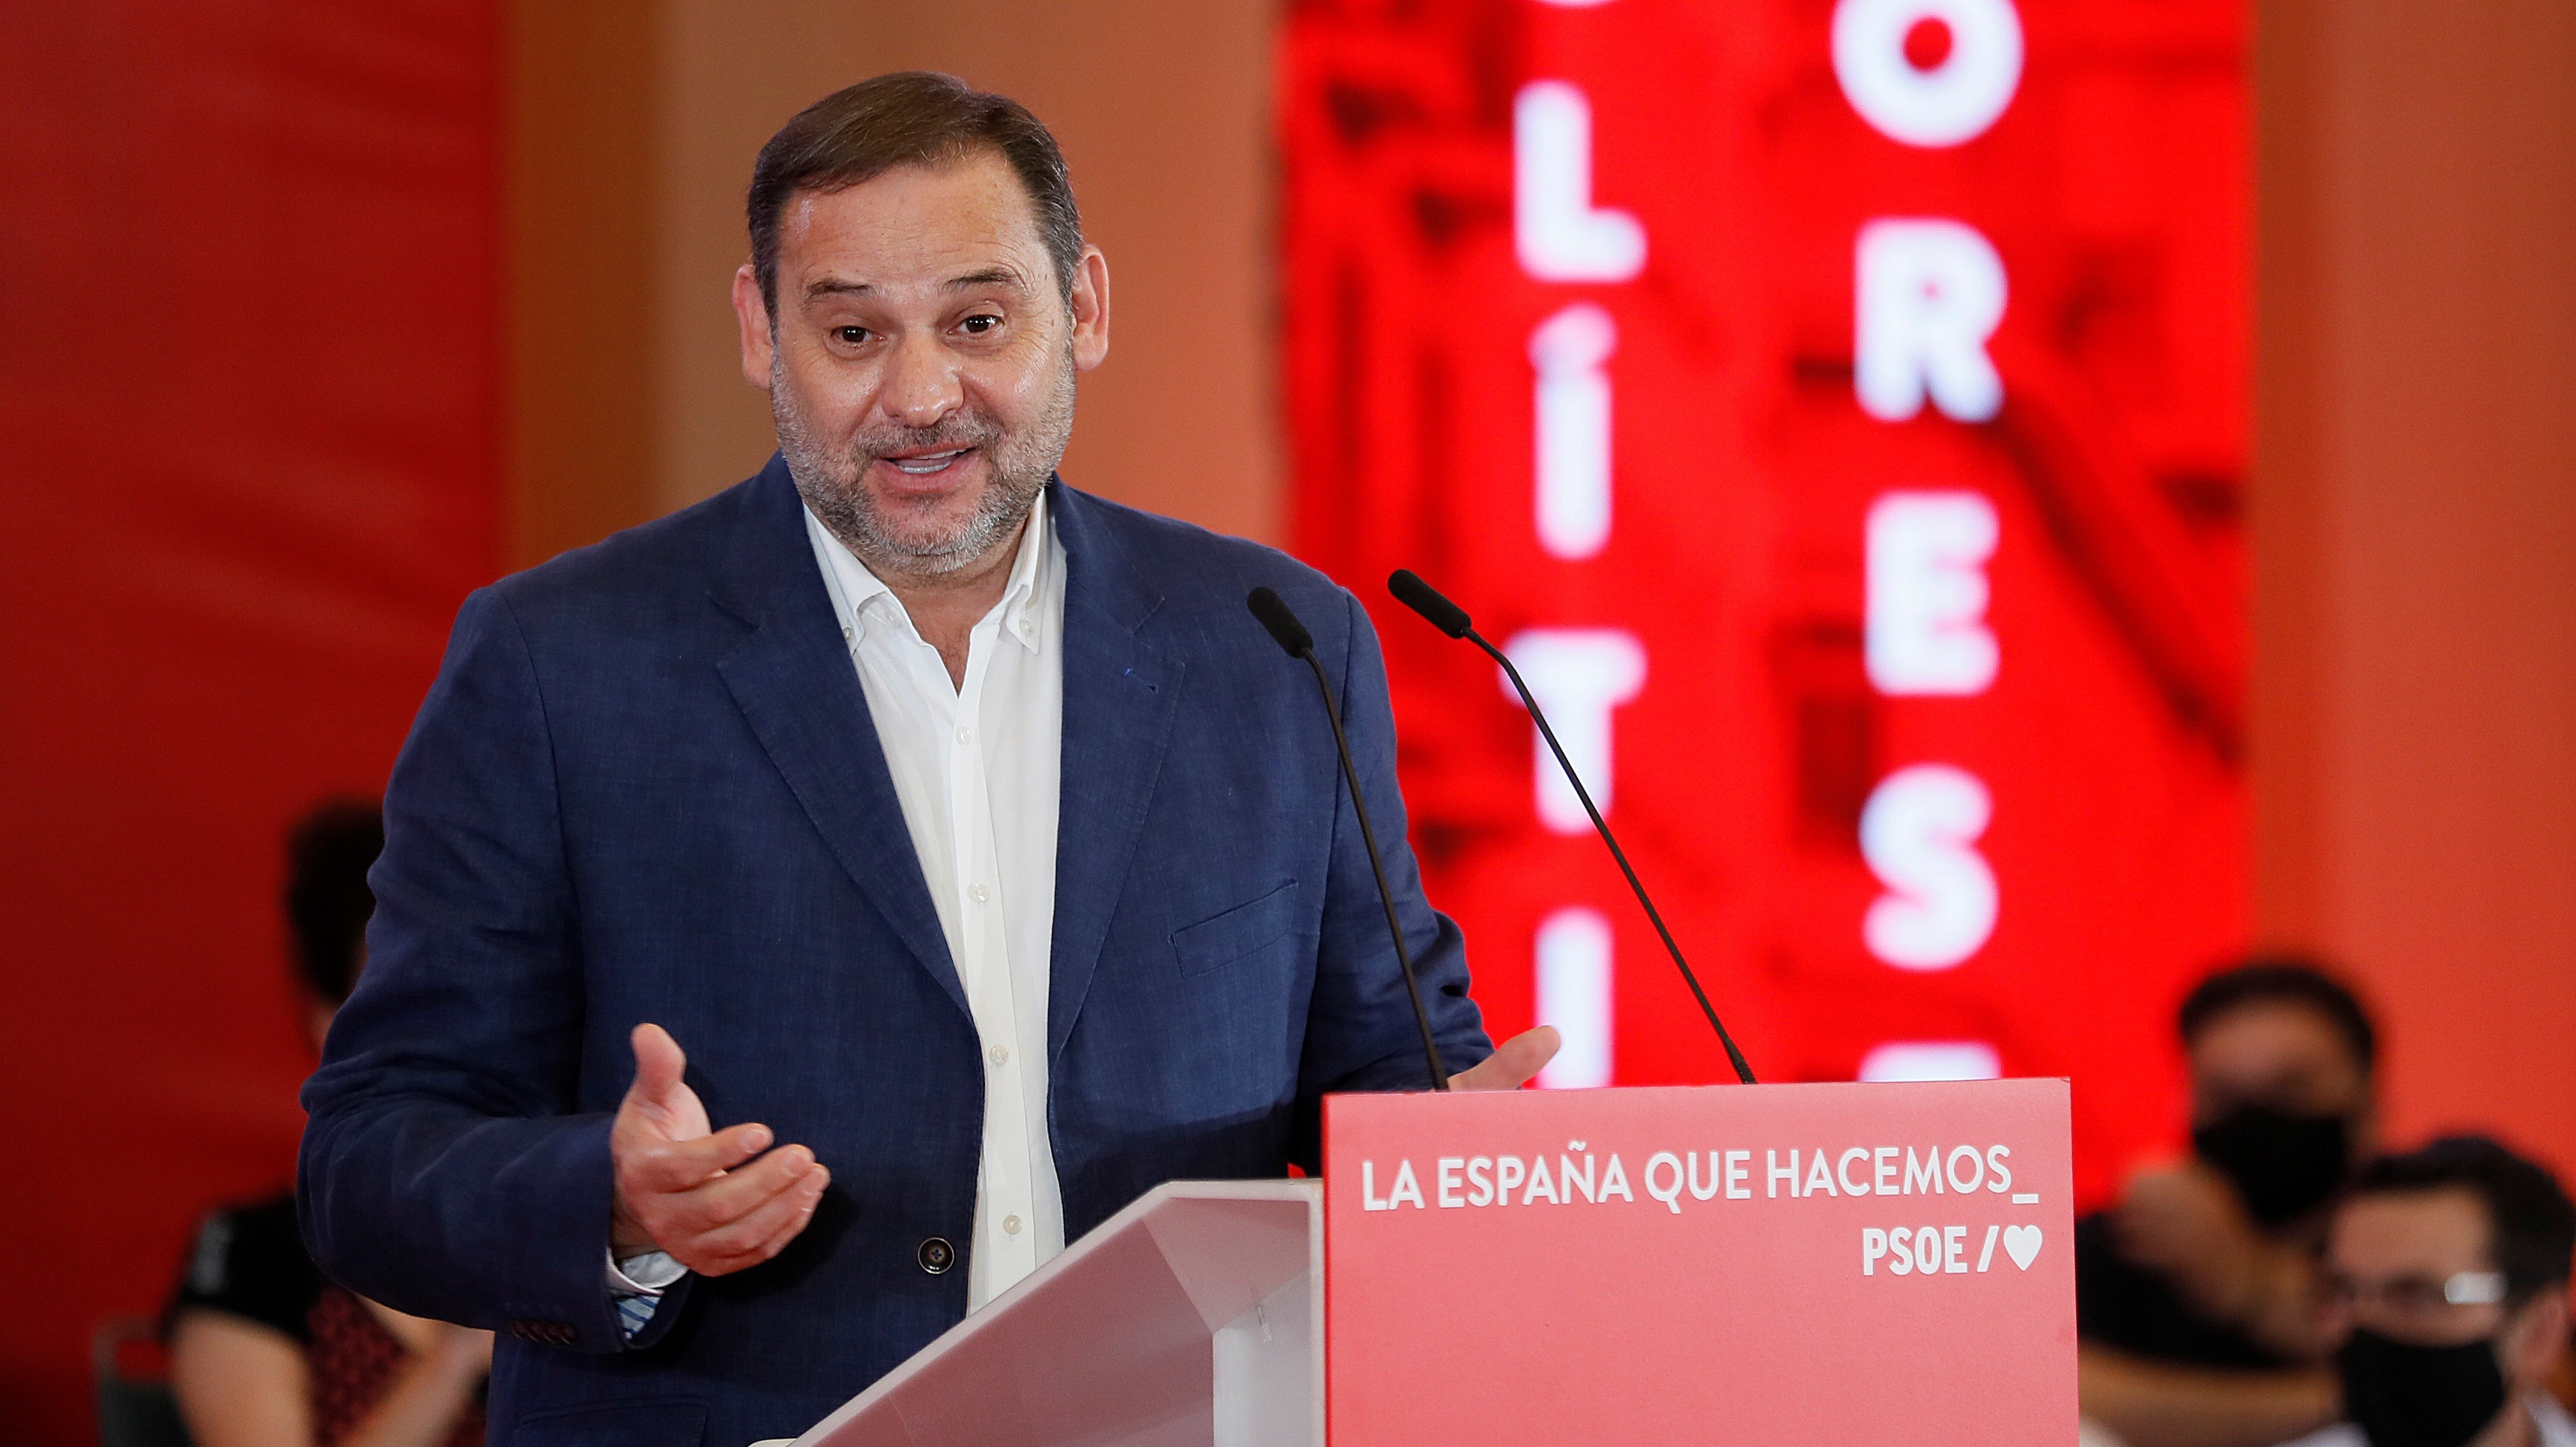 El amargo adiós de José Luis Ábalos al PSOE: "El mayor reconocimiento es tener la conciencia tranquila"